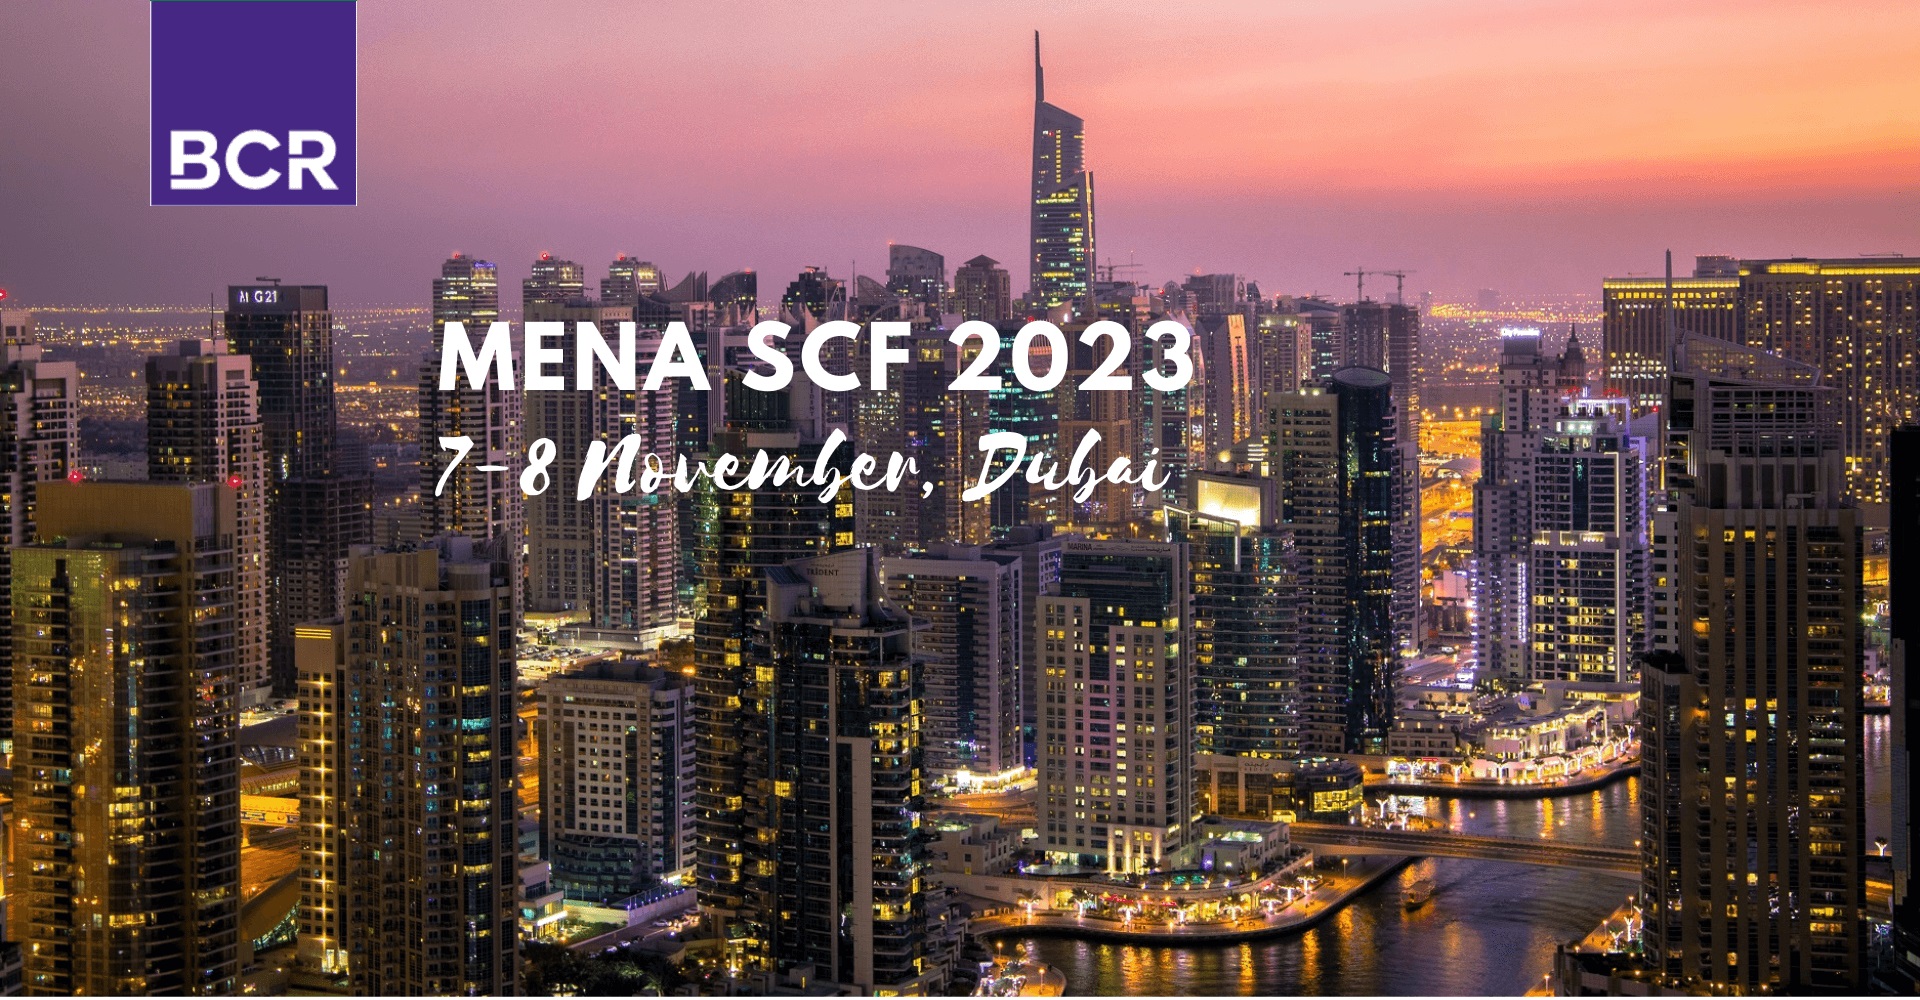 Codix at MENA SCF Dubai 2023